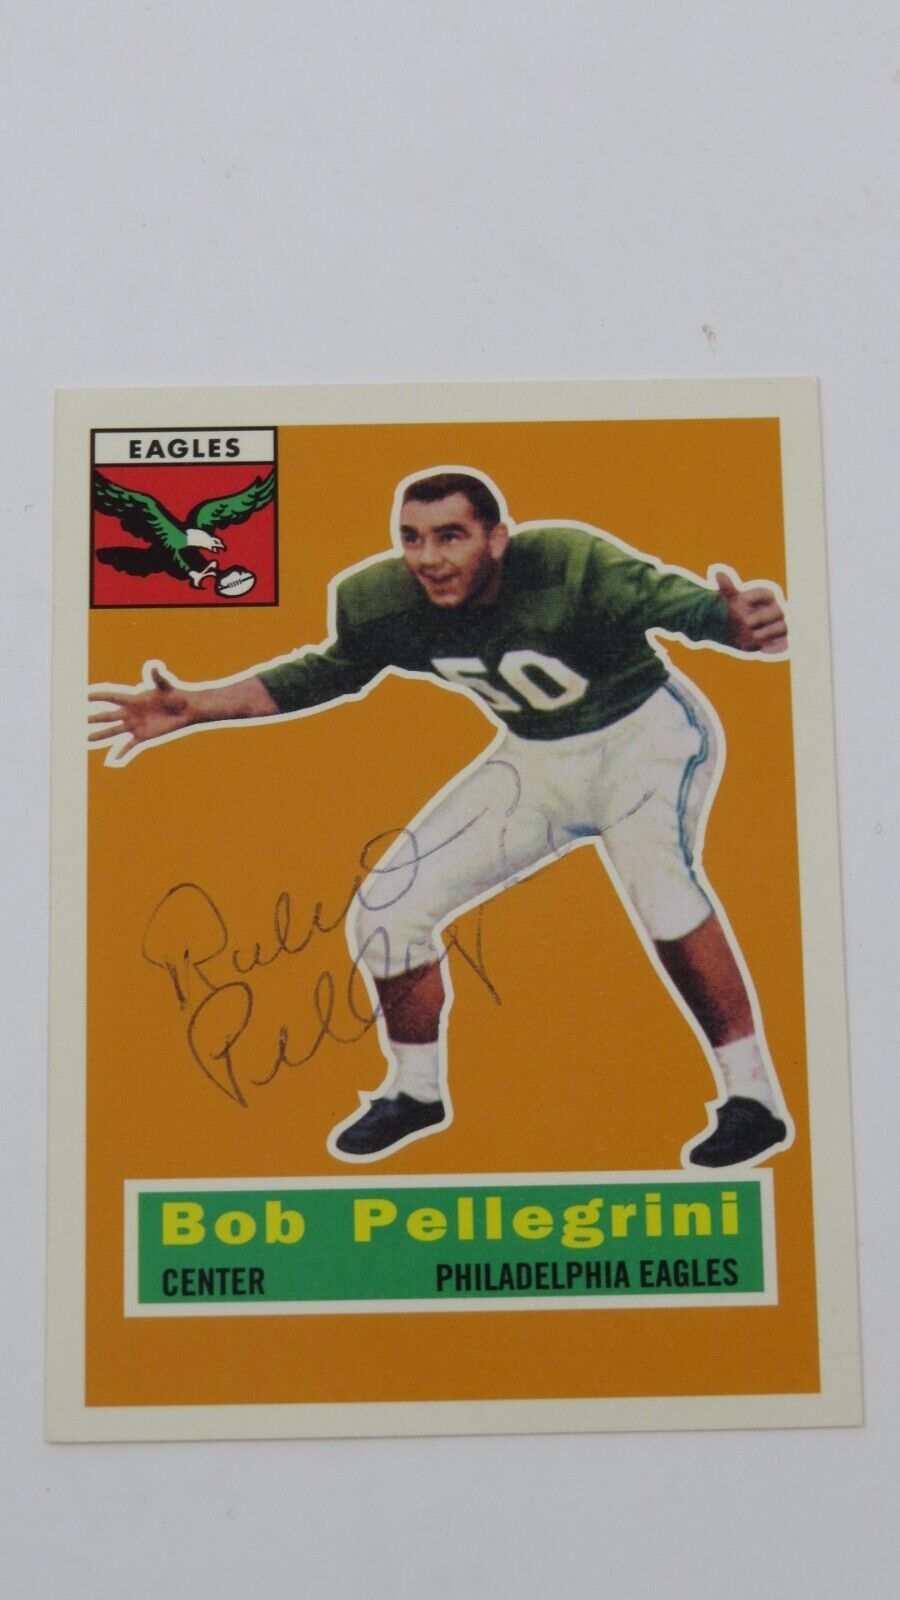 1956 Bob Pellegrini Philadelphia Eagles Topps Archive Football NFL Signed Card